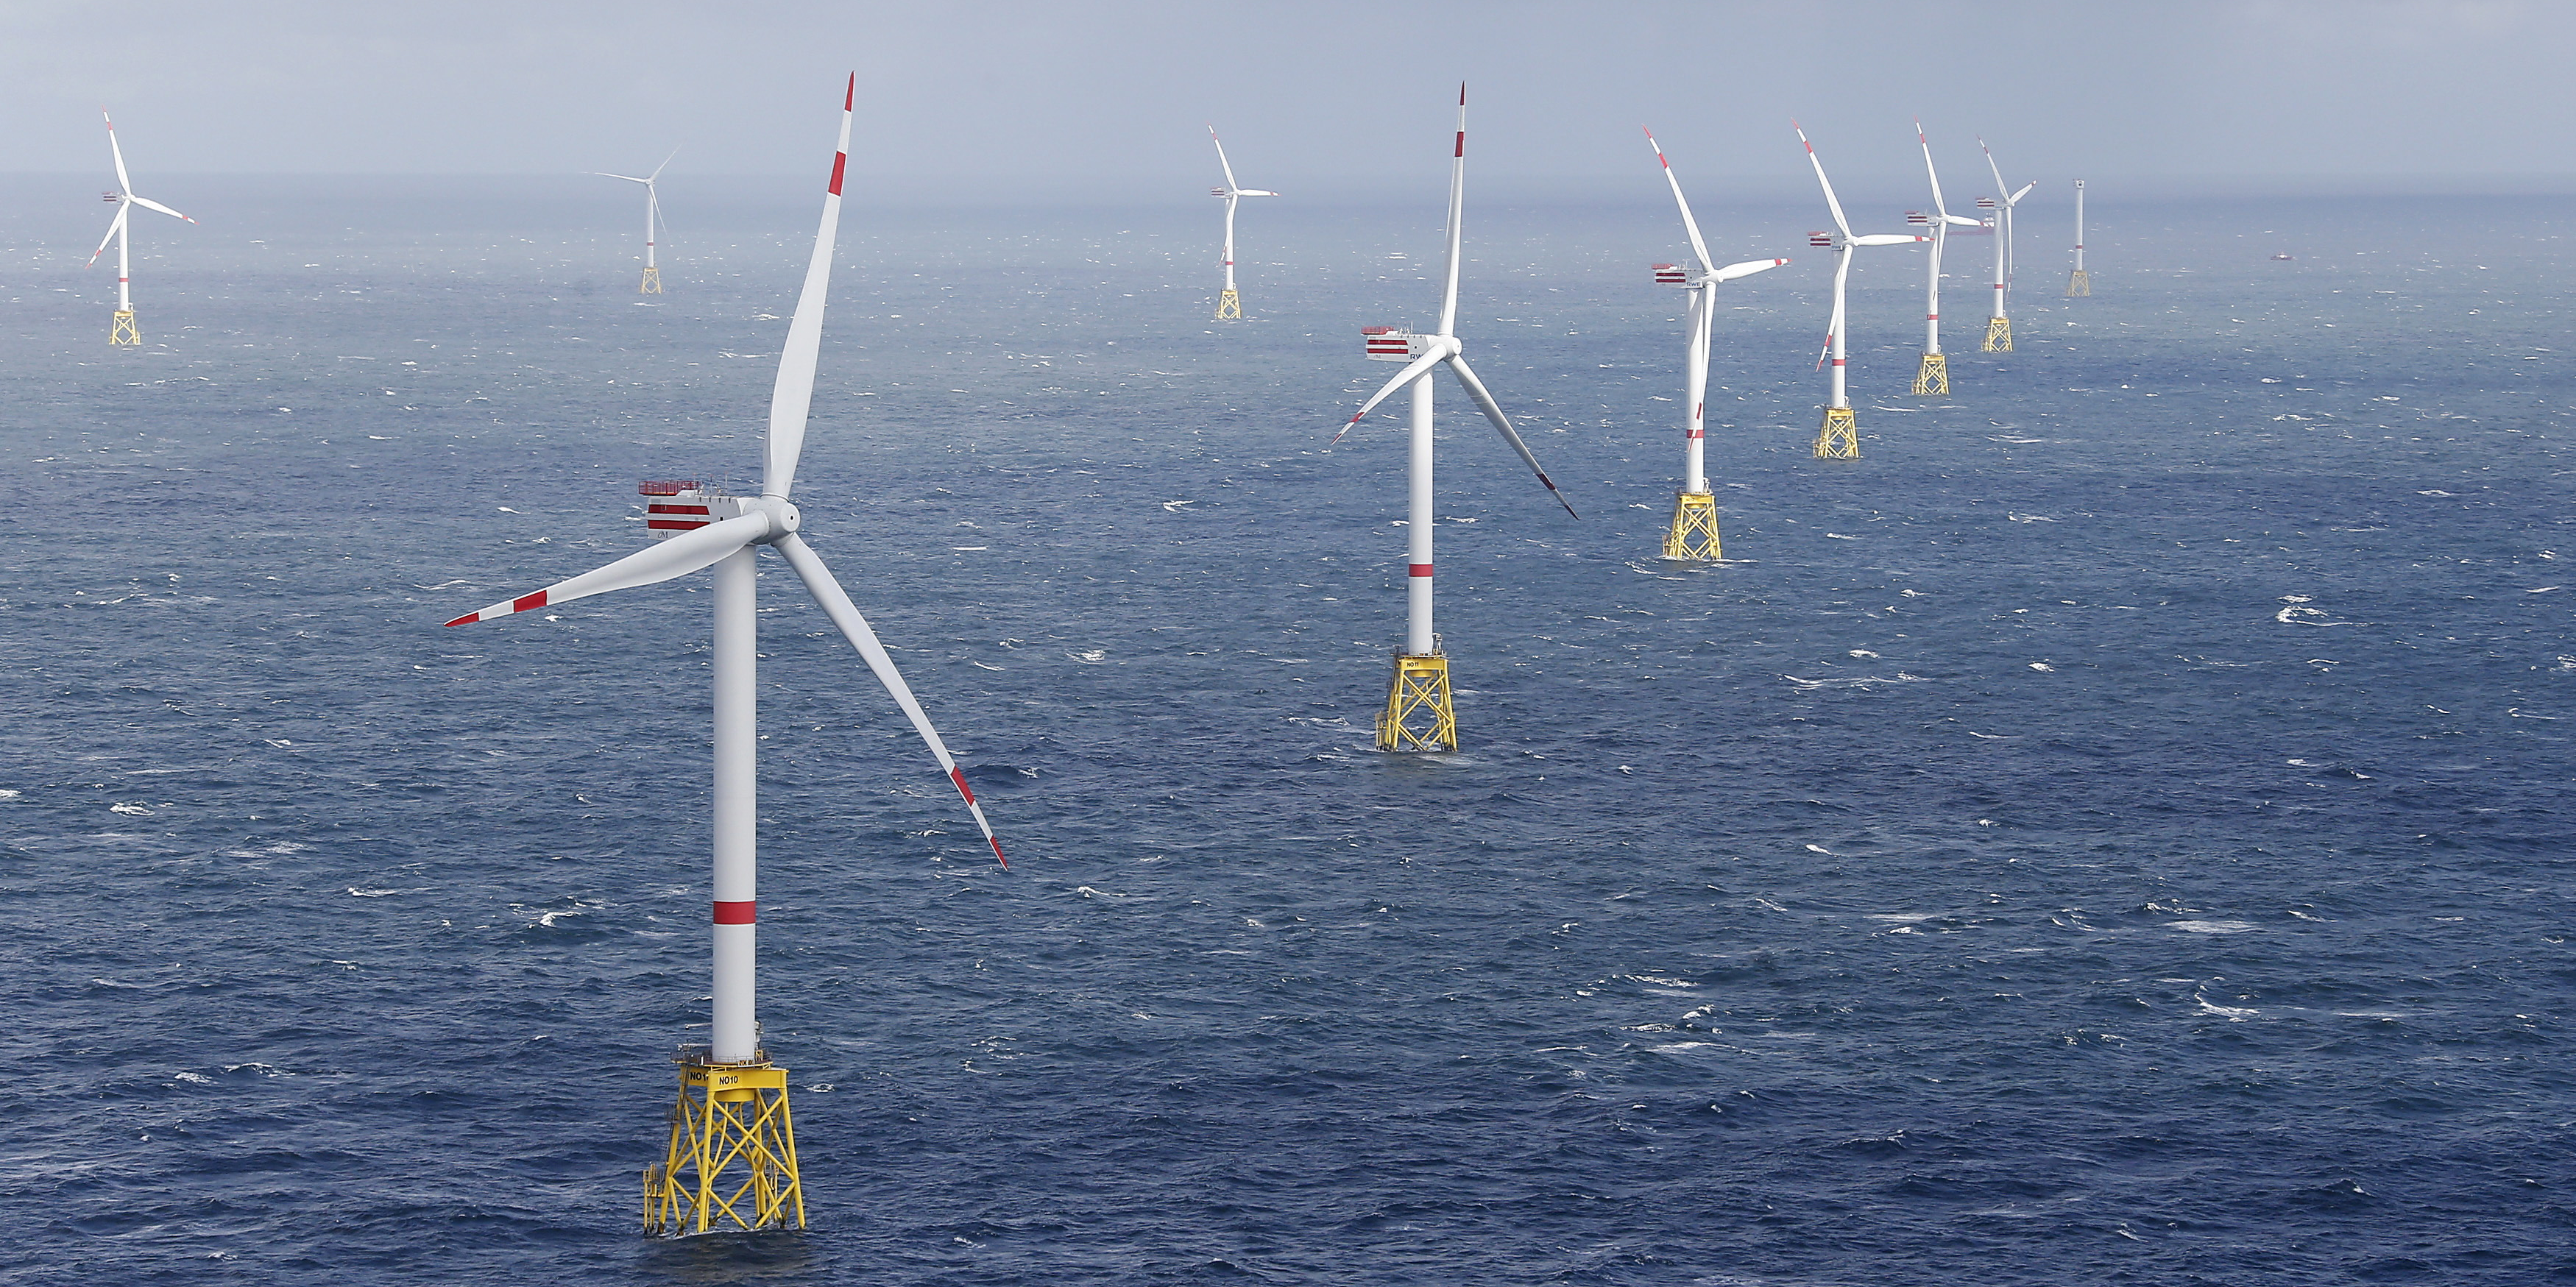 Areva cède son éolien offshore à Gamesa et Siemens